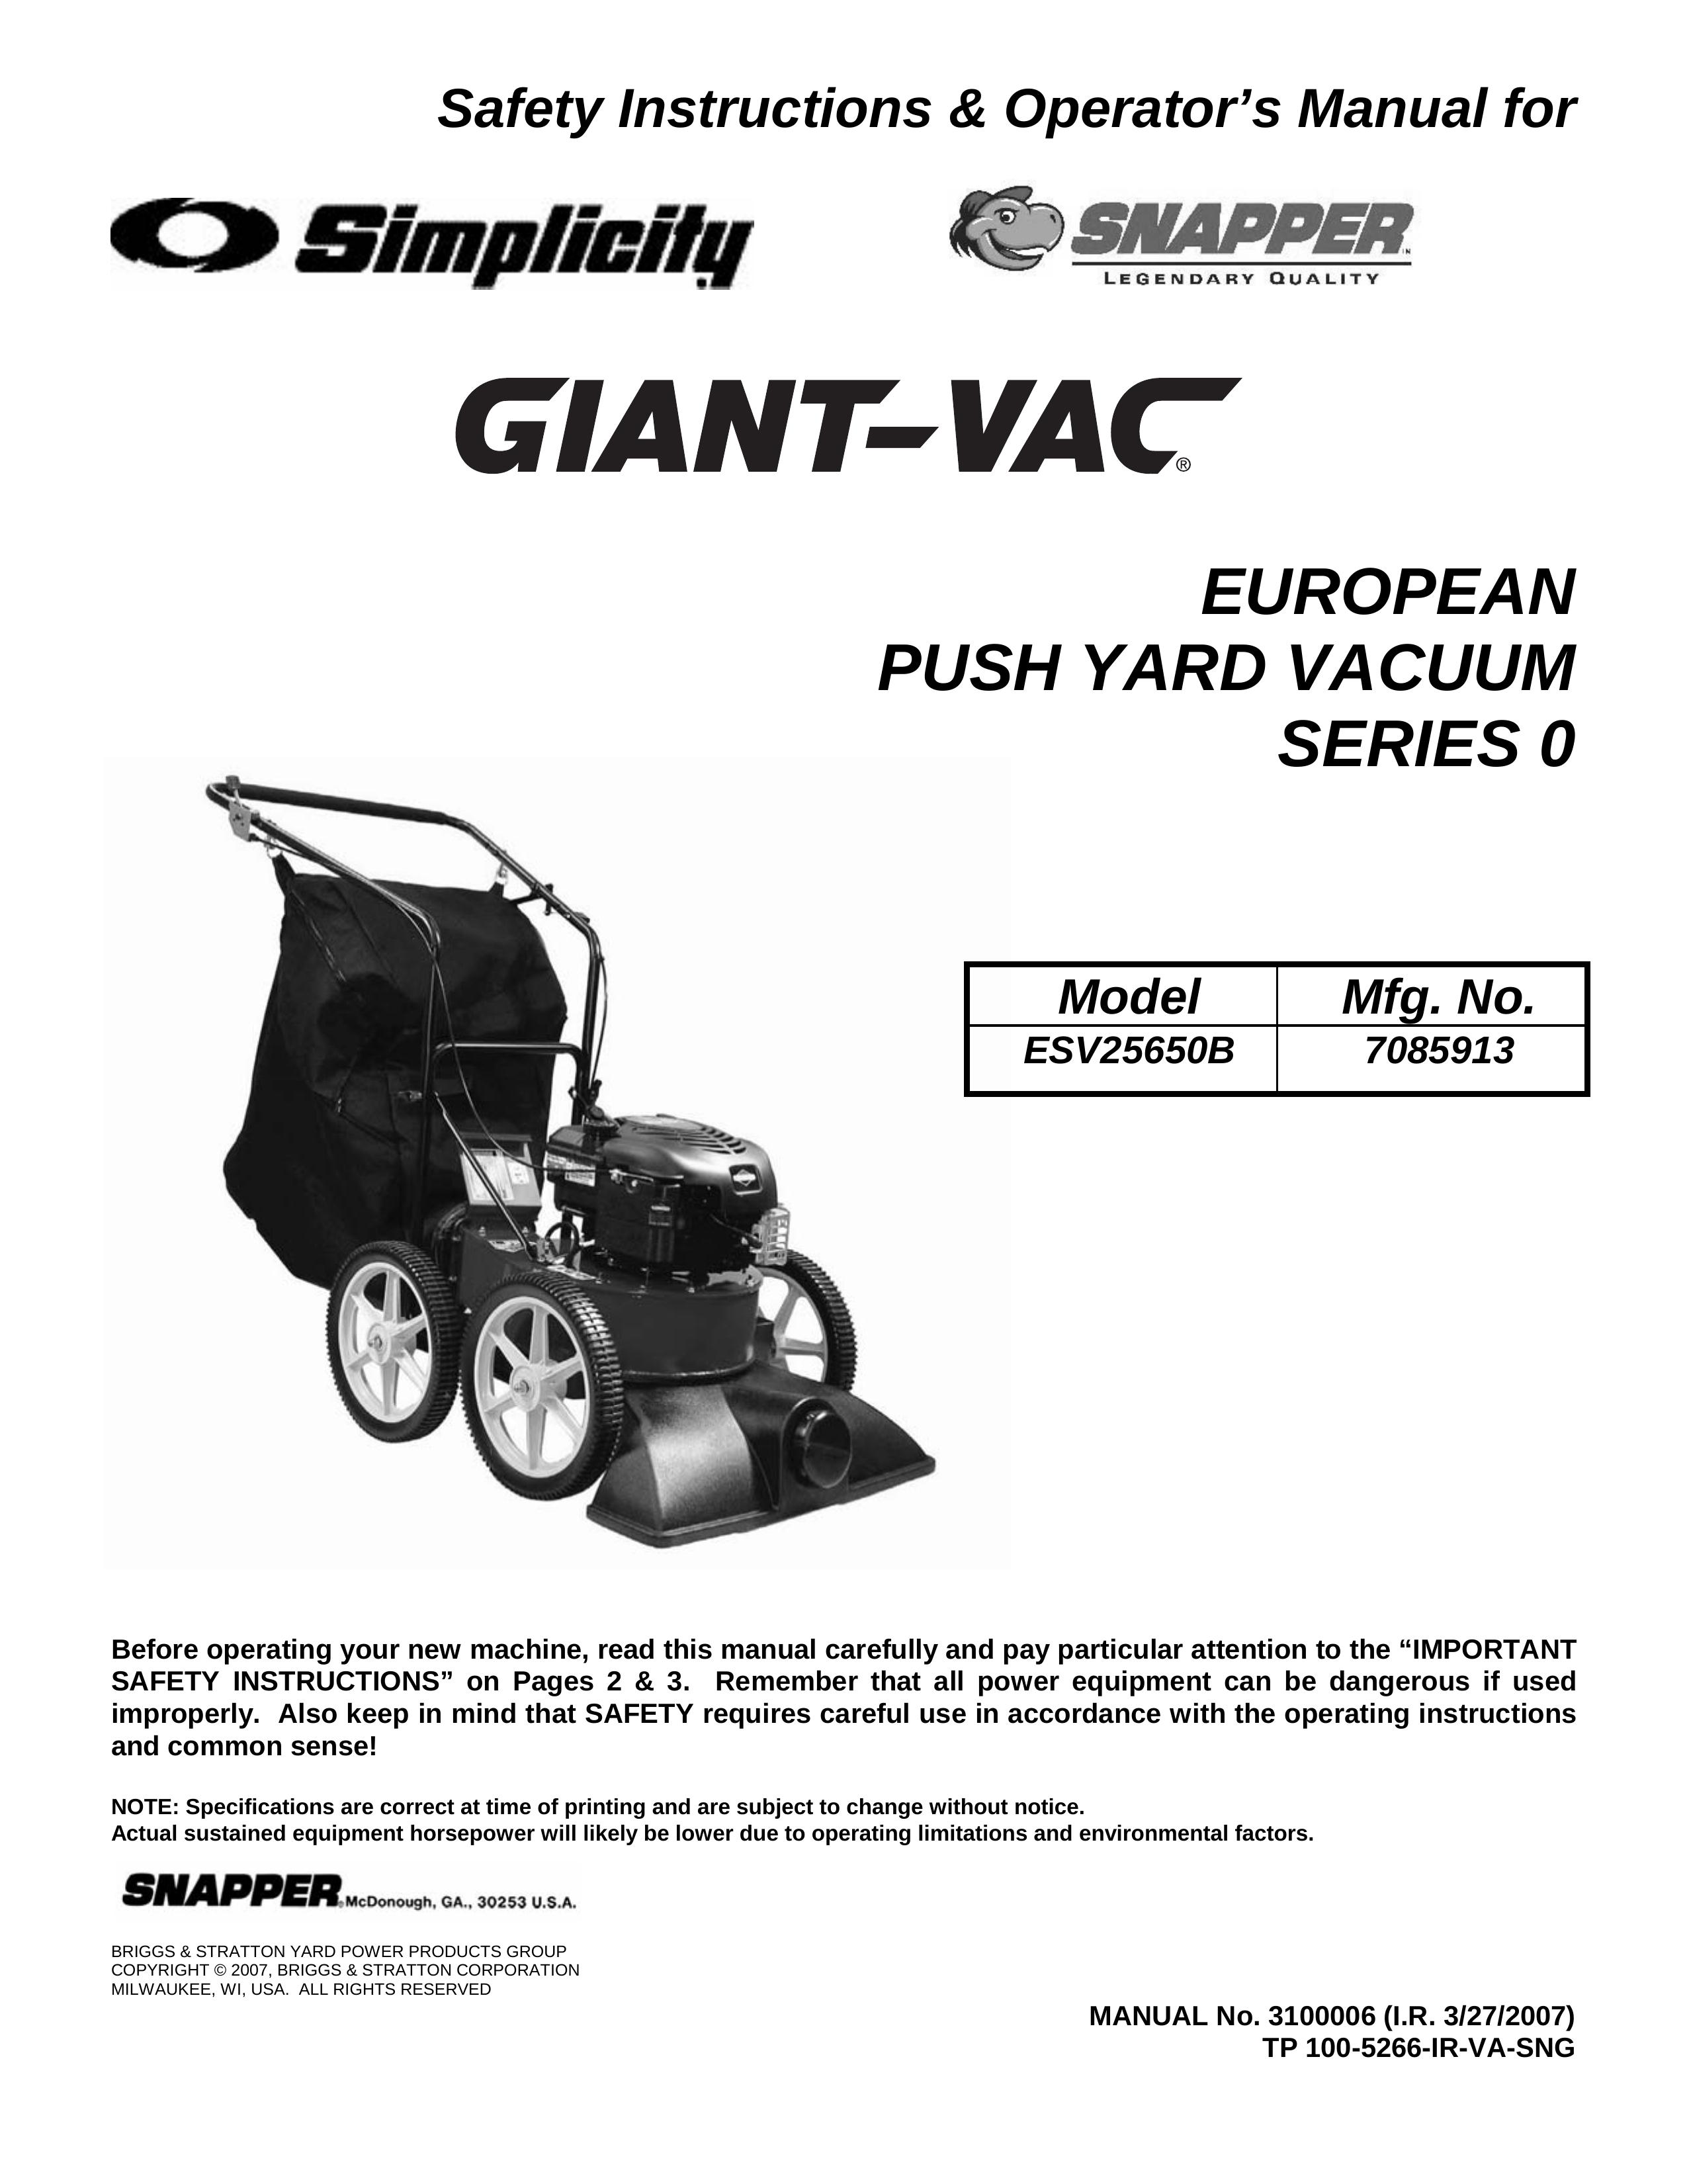 Snapper ESV25650B Yard Vacuum User Manual